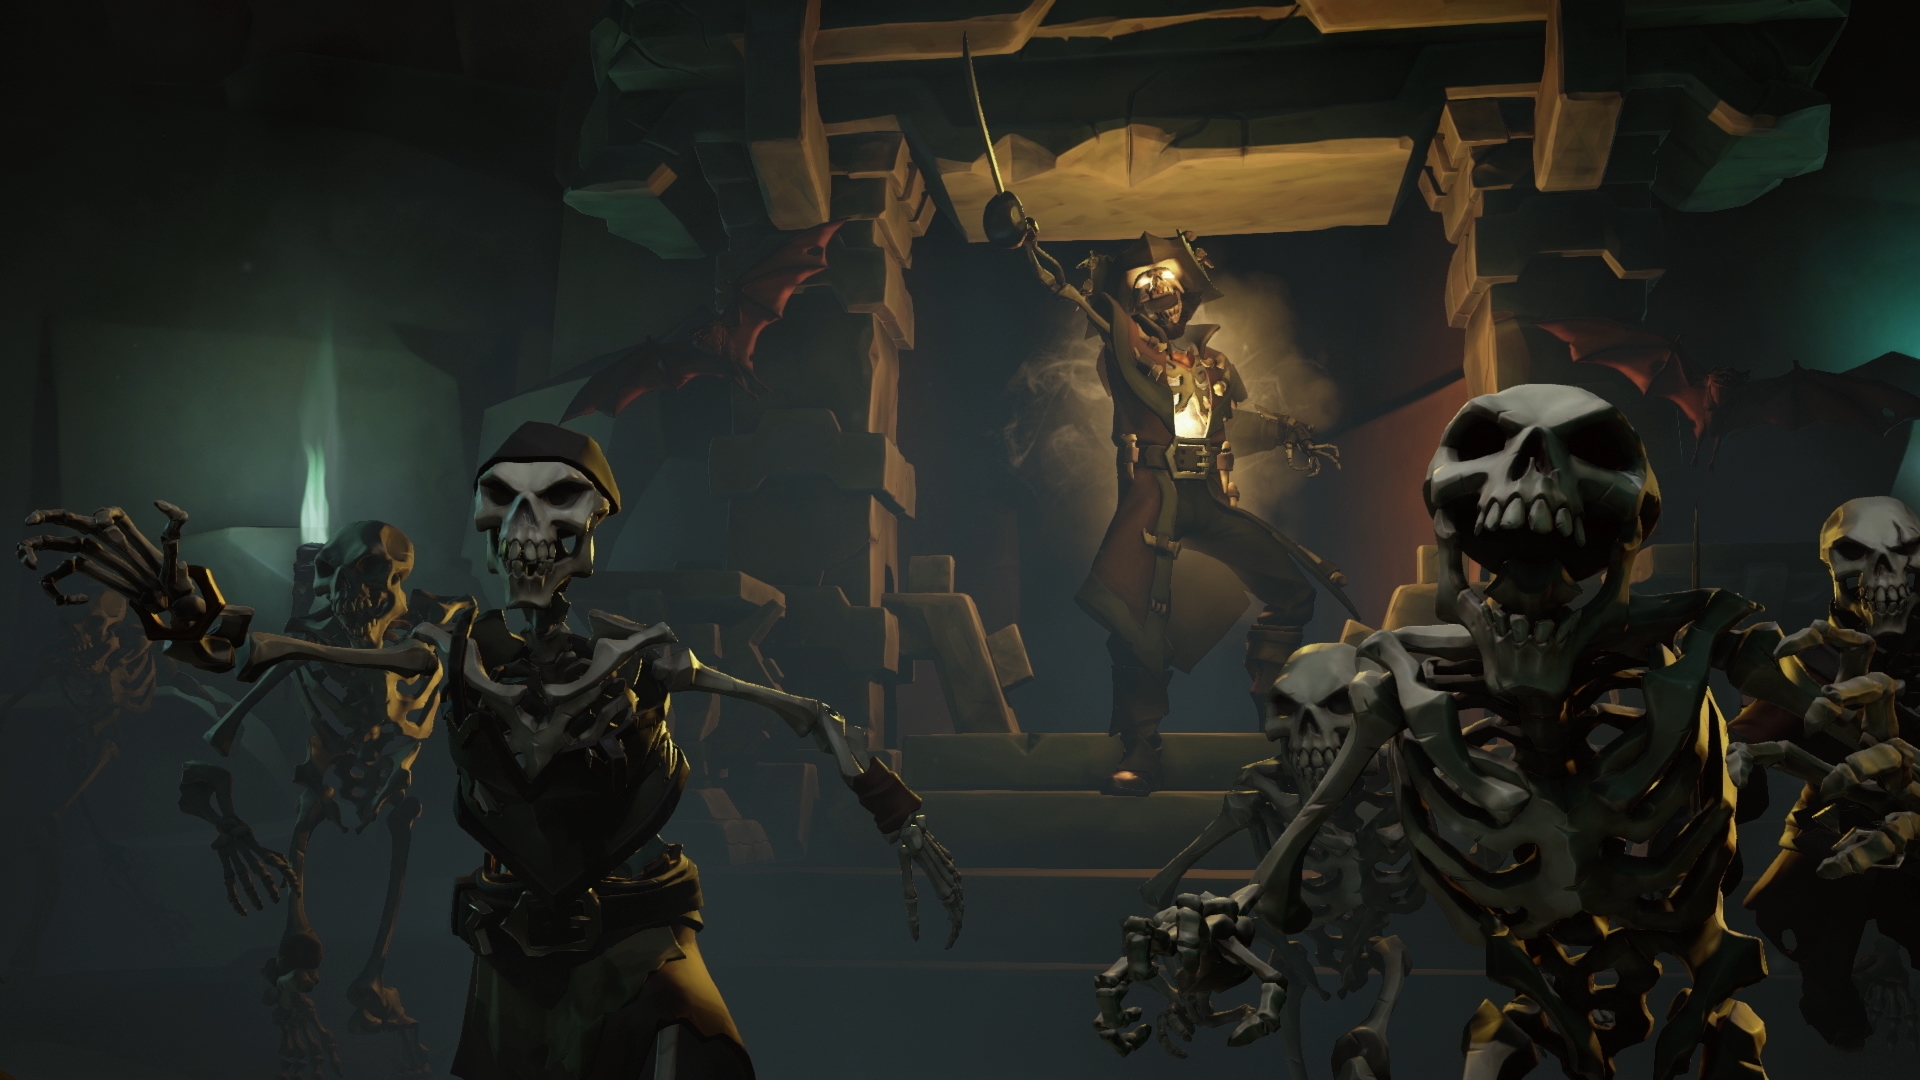 Sea of Thieves: Arrr, Piraten spielen schon nächste Woche die technische Alpha!